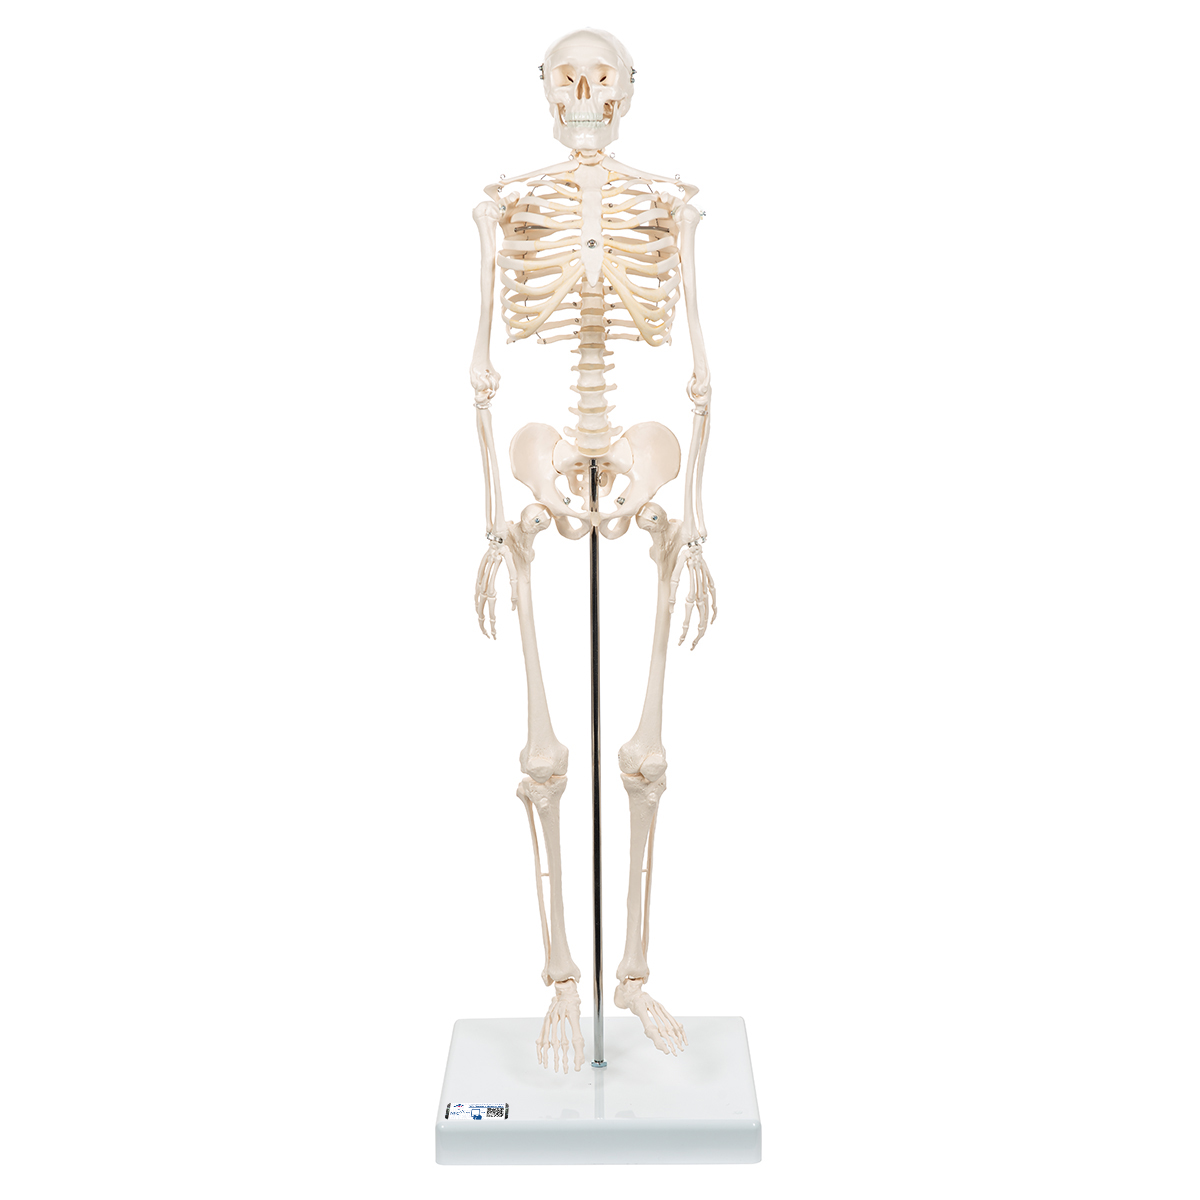 Mini-squelette Shorty, sur socle - 3B Smart Anatomy - 1000039